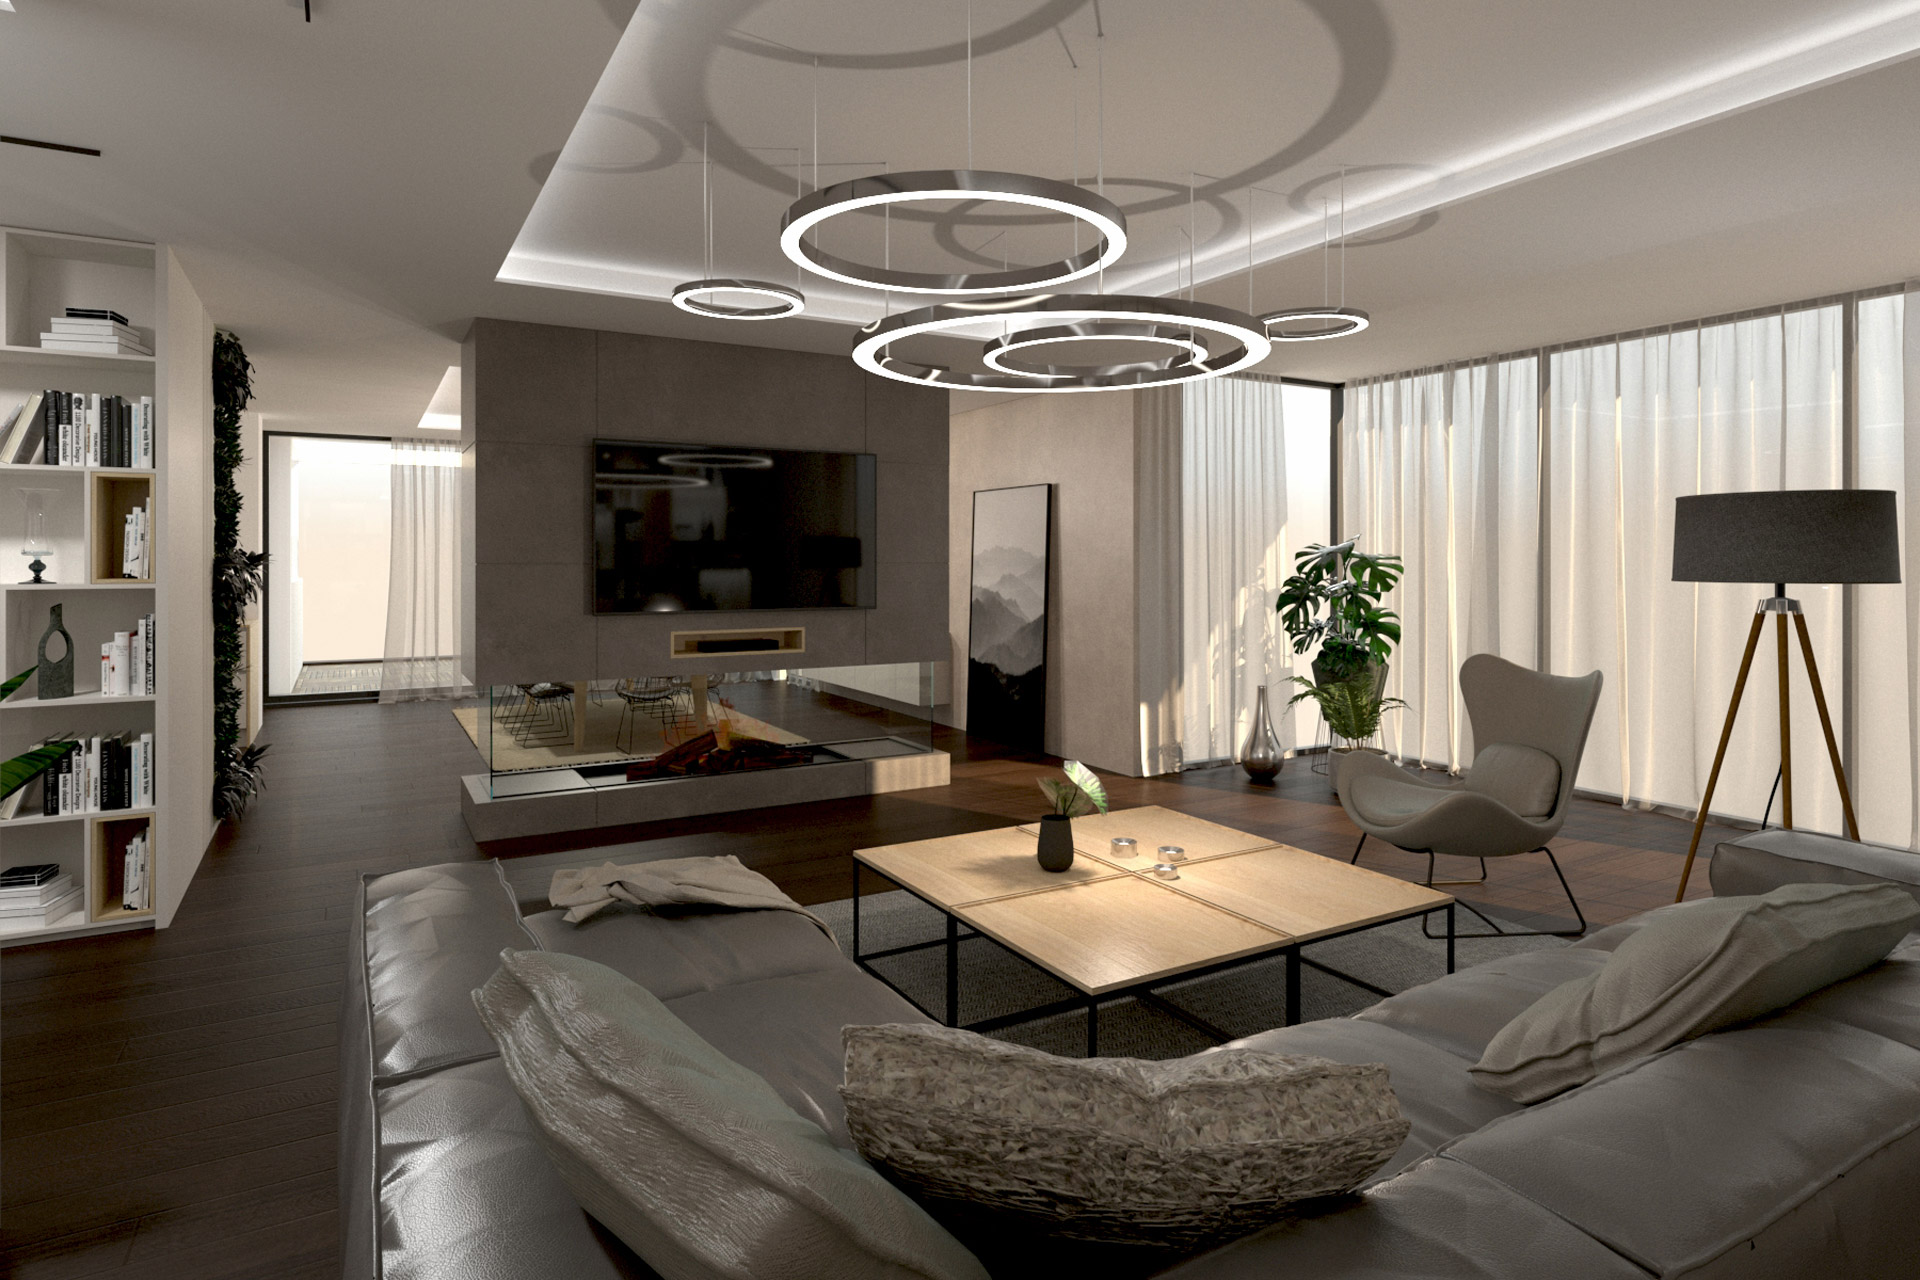 Hanak Modern interior design of the house Living room